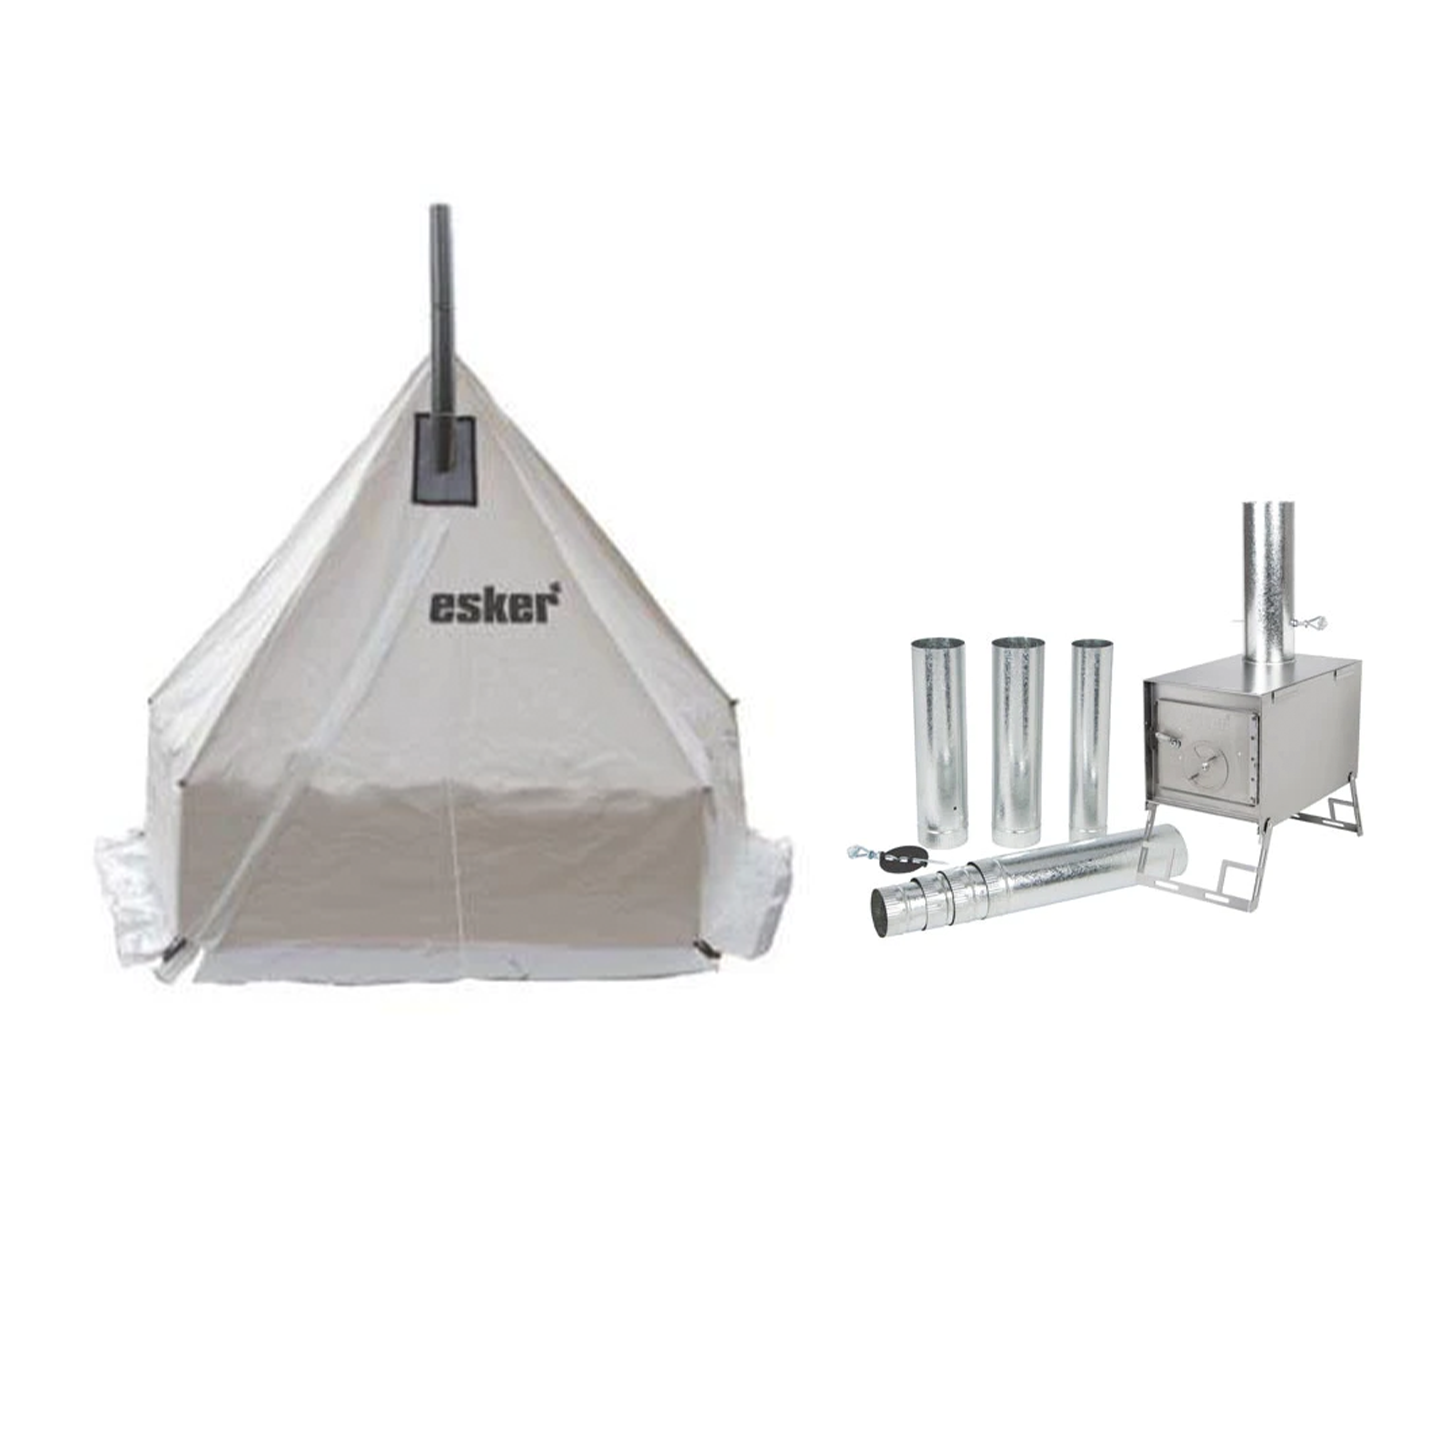 Esker - Hot Tent Combo - Arctic Fox